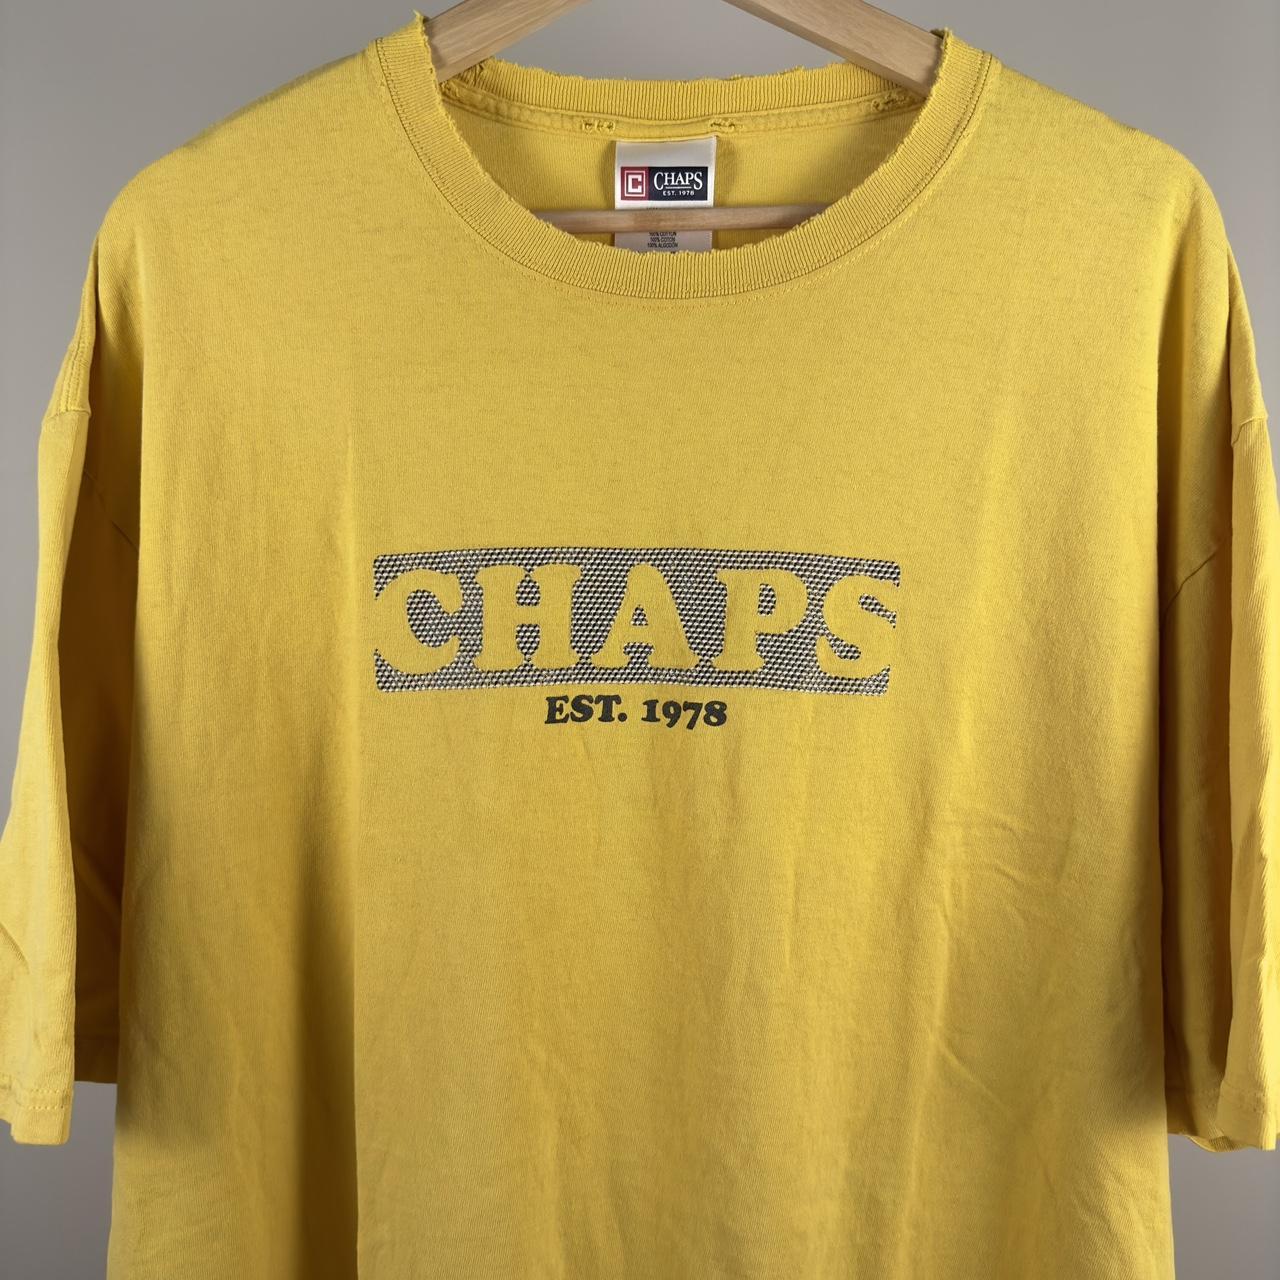 Vintage Chaps Ralph Lauren T-Shirt Distressed Chaps... - Depop